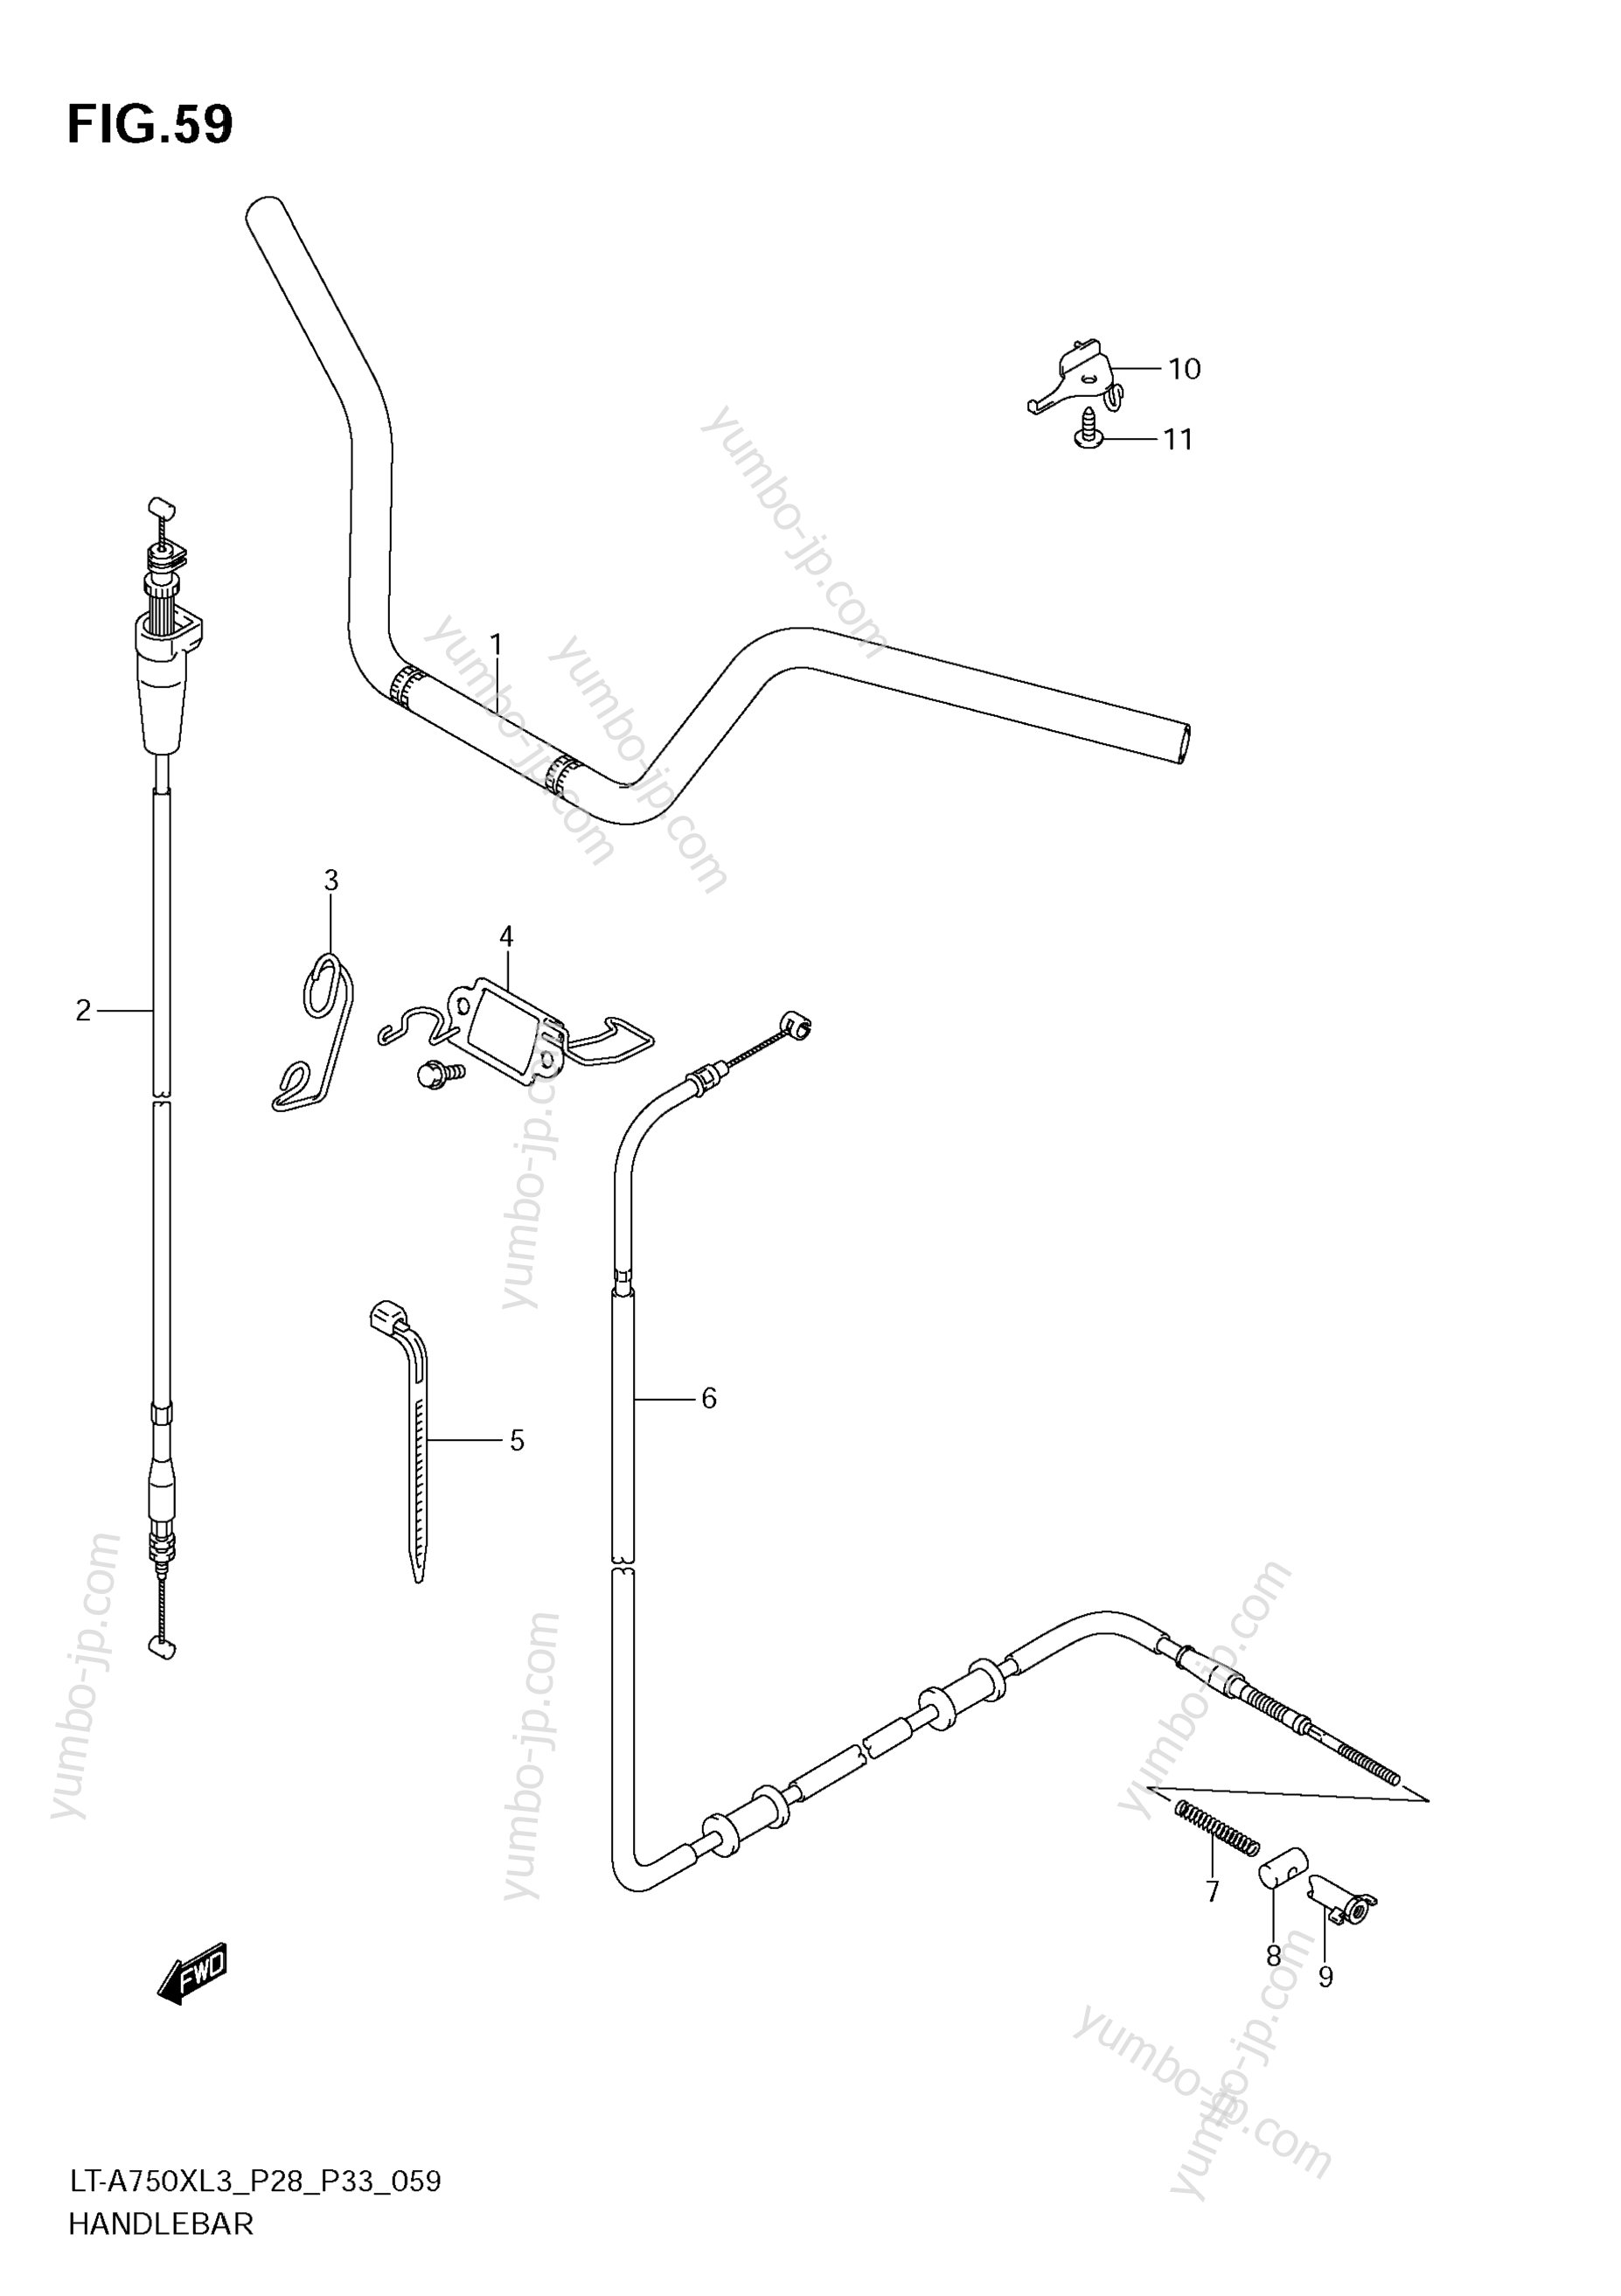 Румпель (рукоятка управления) для квадроциклов SUZUKI KingQuad (LT-A750X) 2013 г.